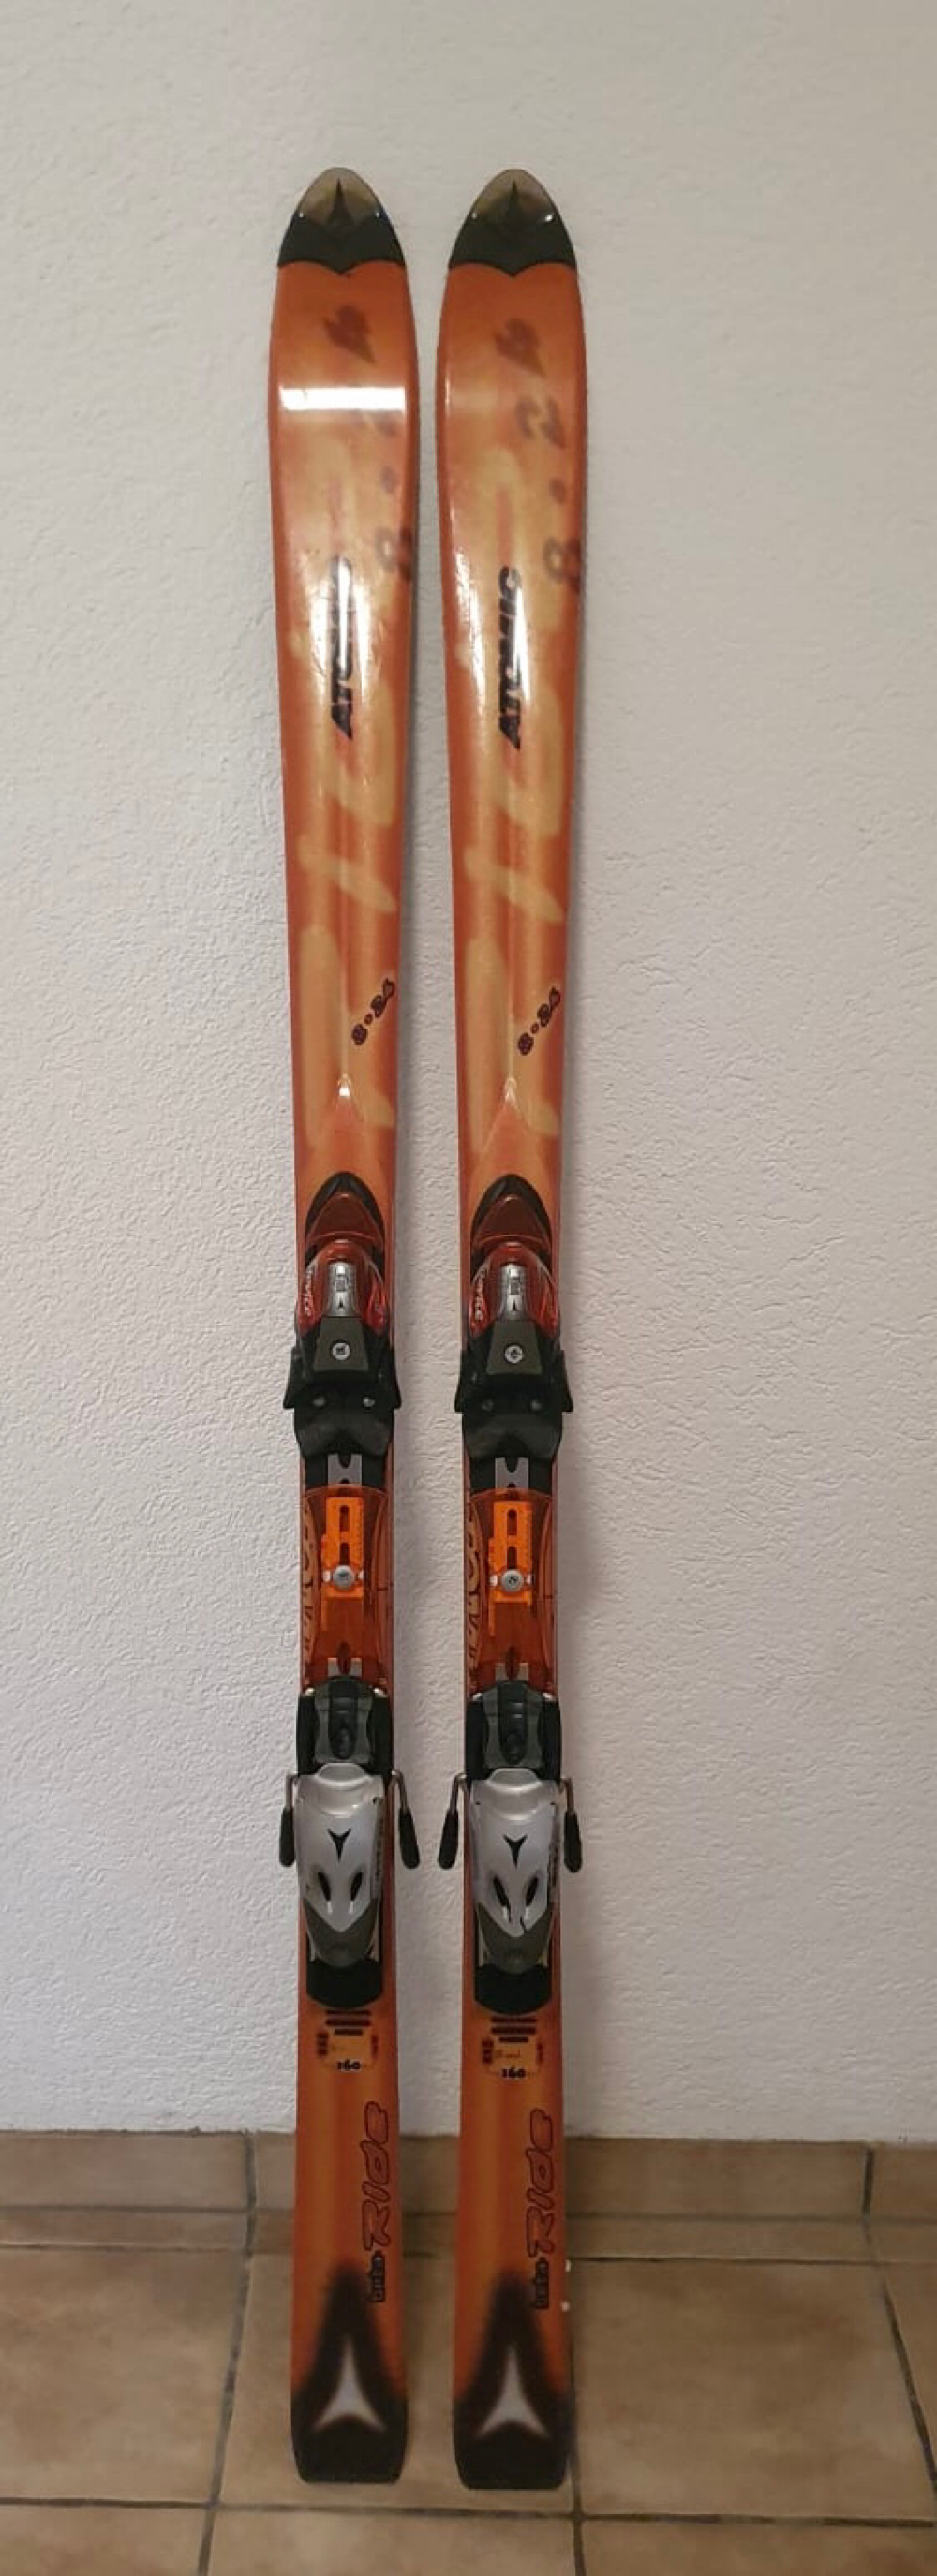 Ski, 160cm